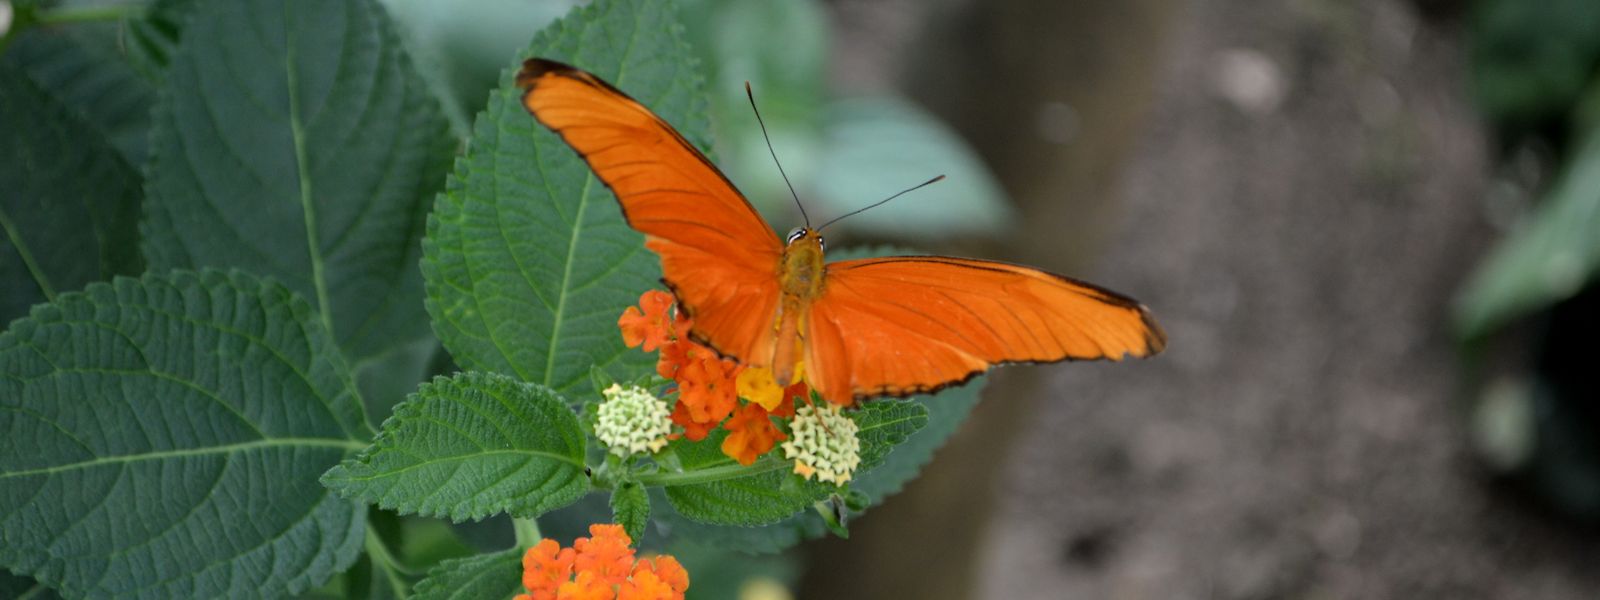 Au total, environ 500 spécimens de papillons volent en liberté dans la serre tropicale.